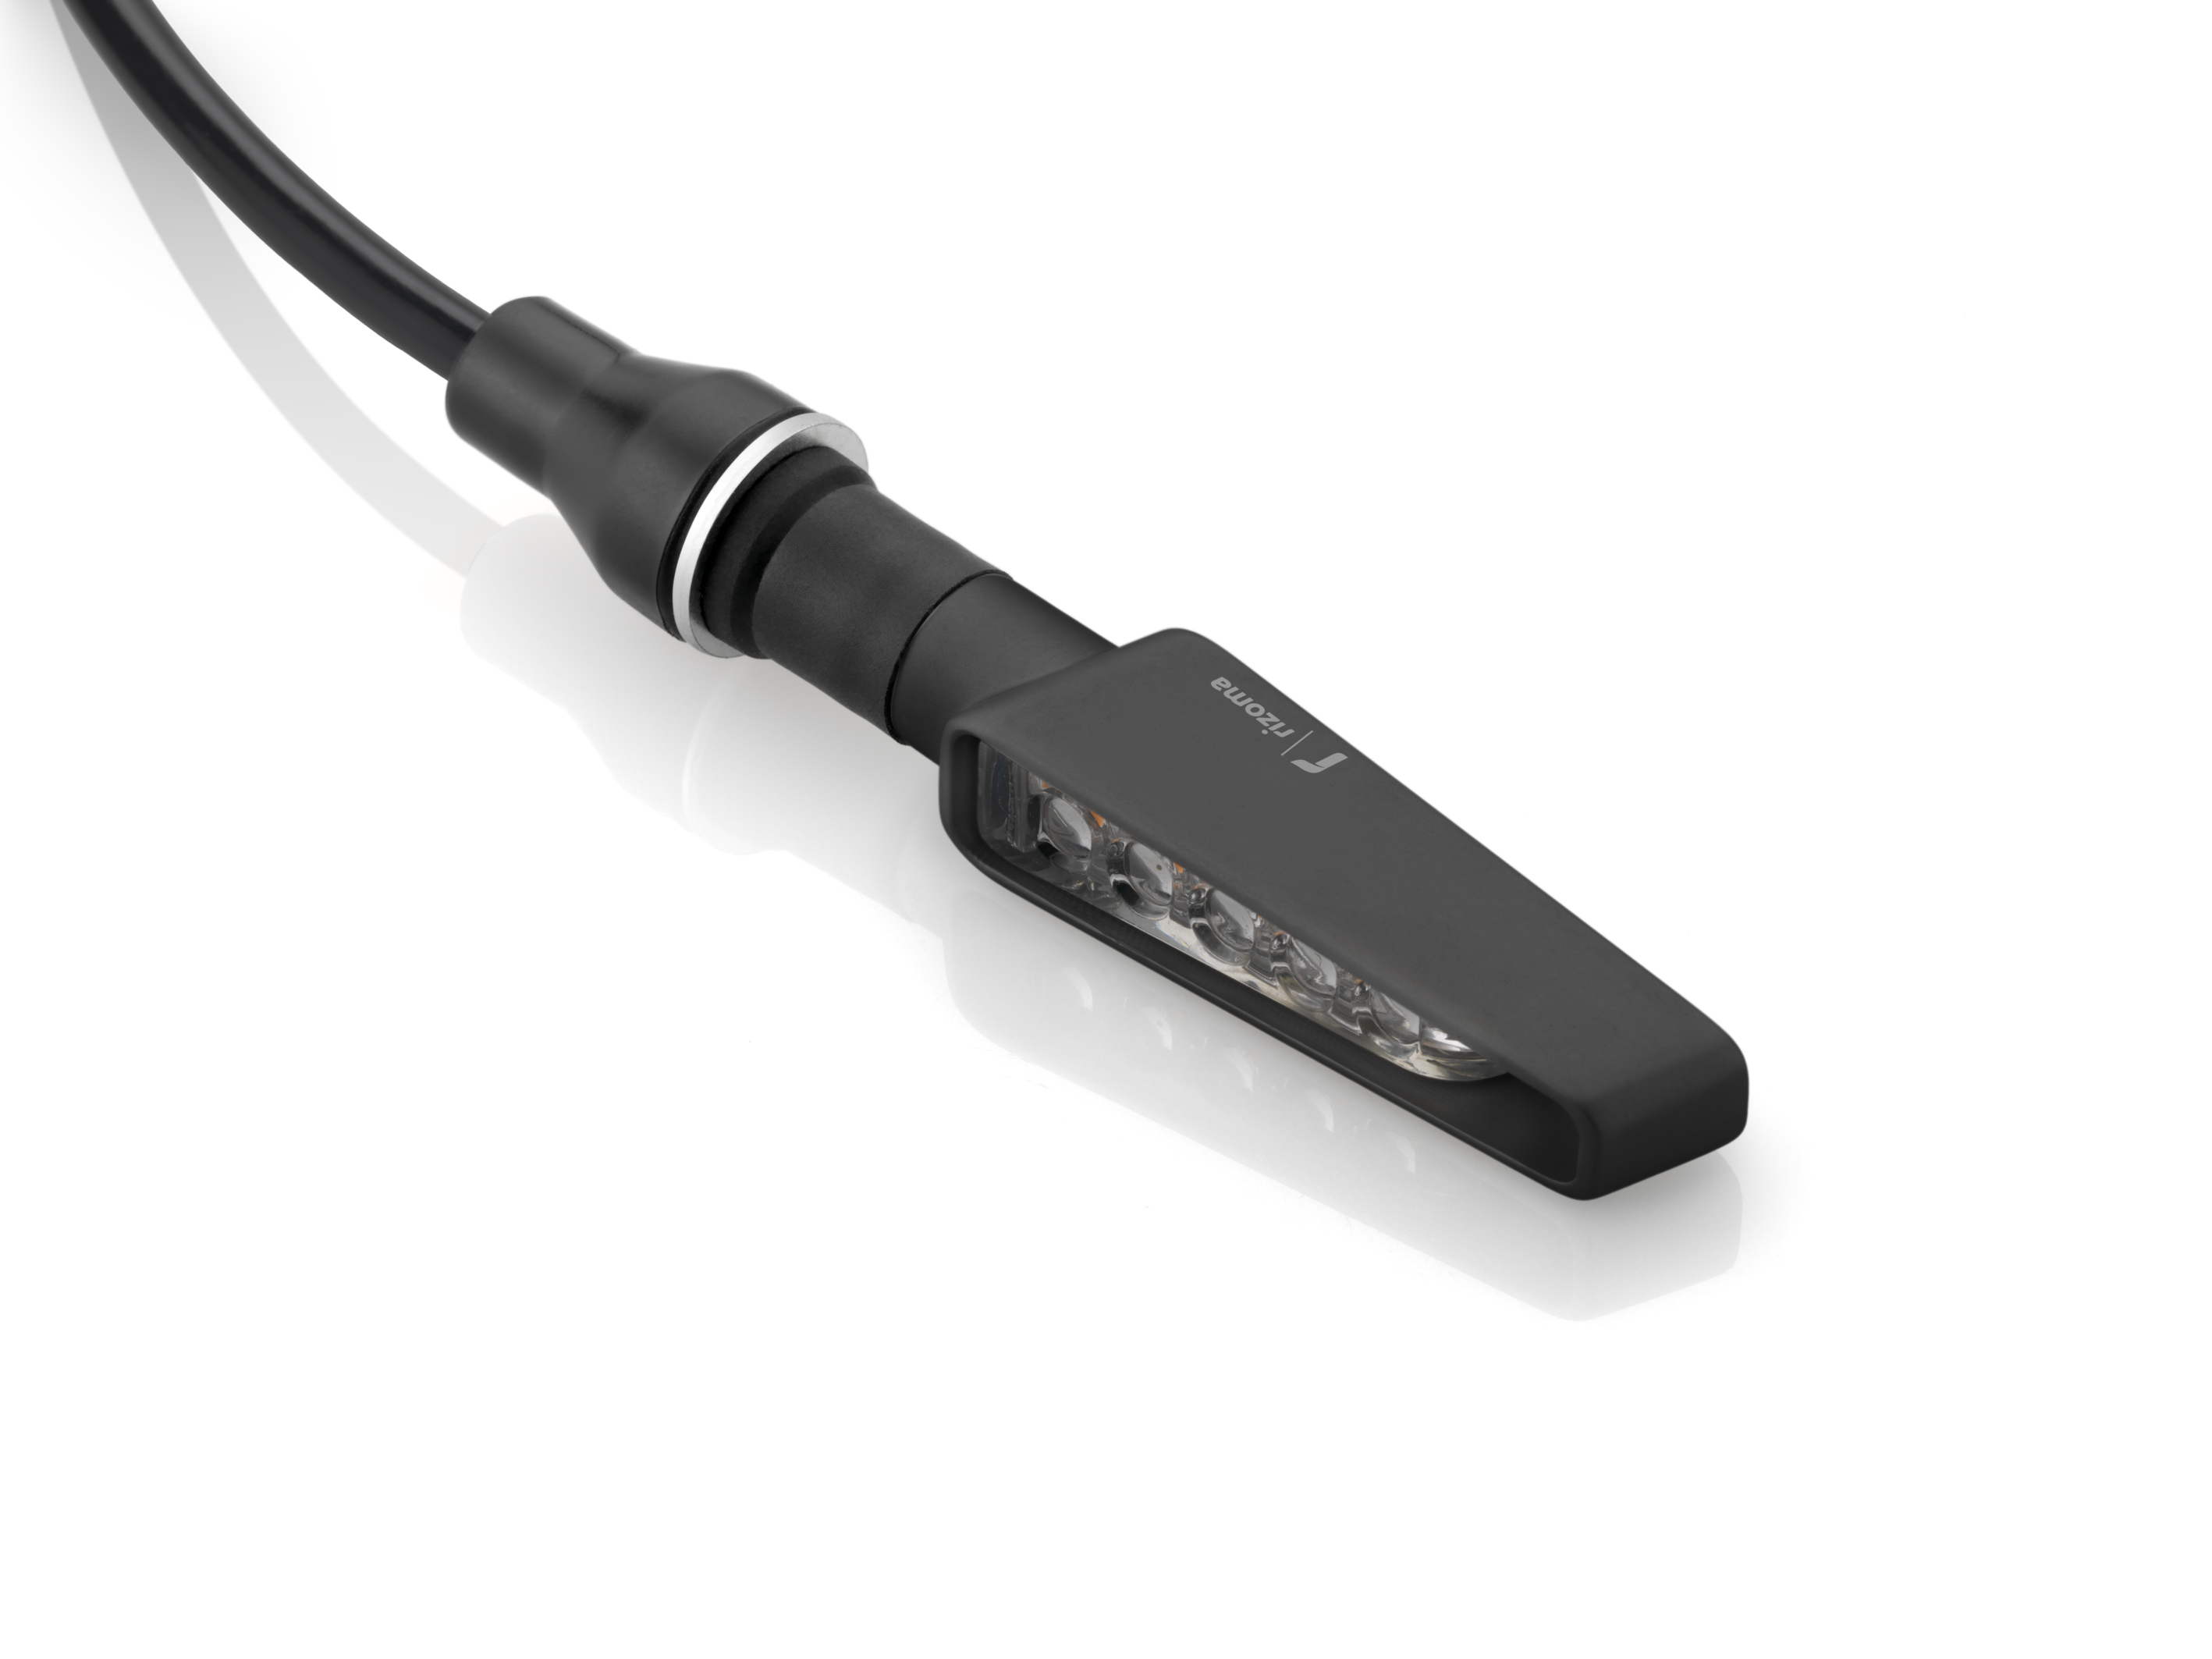 Lauflampe Bauch wiederaufladbar 120 Lumen - Run Light 120 USB schwarz -  Decathlon